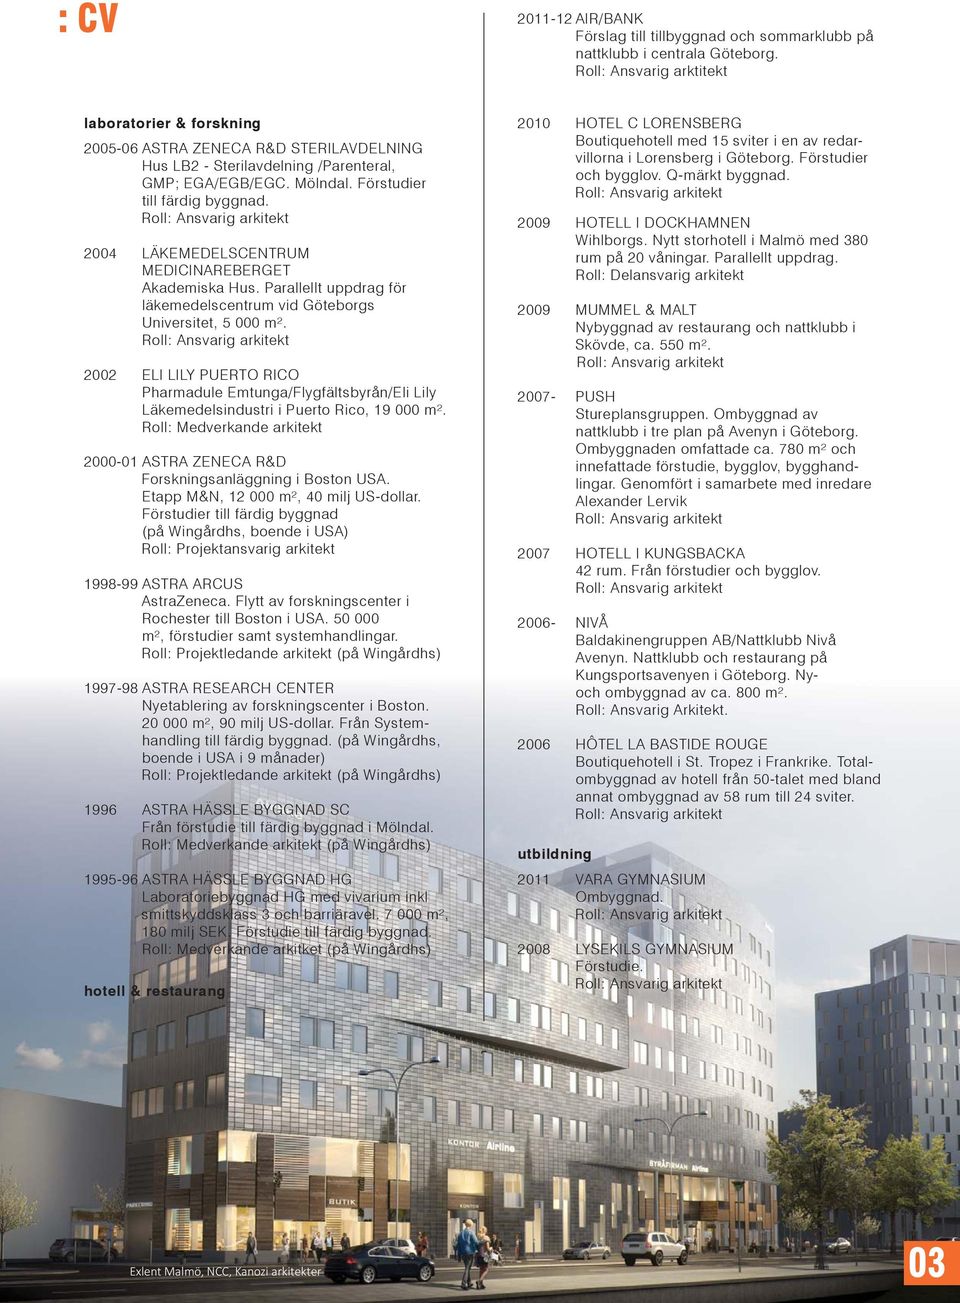 2004 LÄKEMEDELSCENTRUM MEDICINAREBERGET Akademiska Hus. Parallellt uppdrag för läkemedelscentrum vid Göteborgs Universitet, 5 000 m².